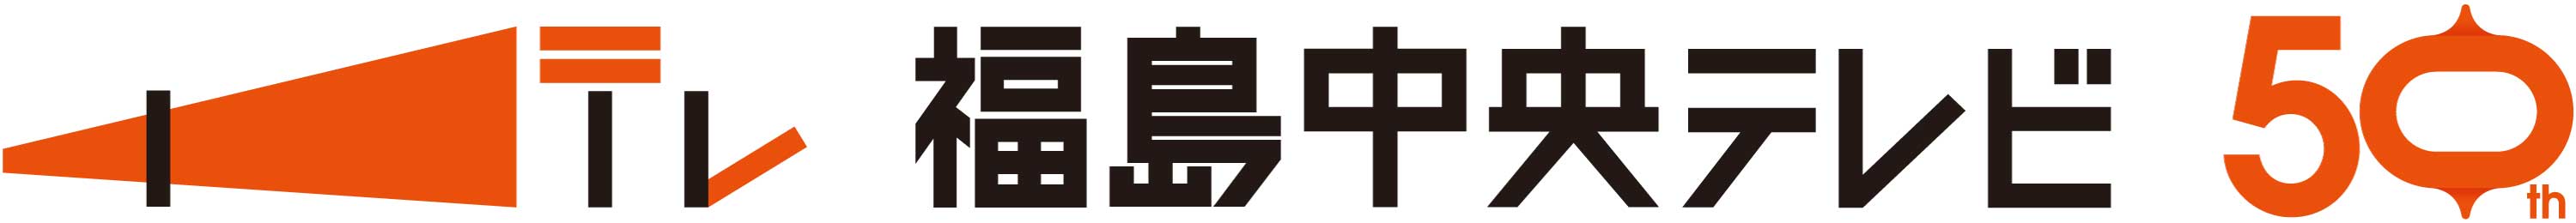 福島中央テレビ開局50周年